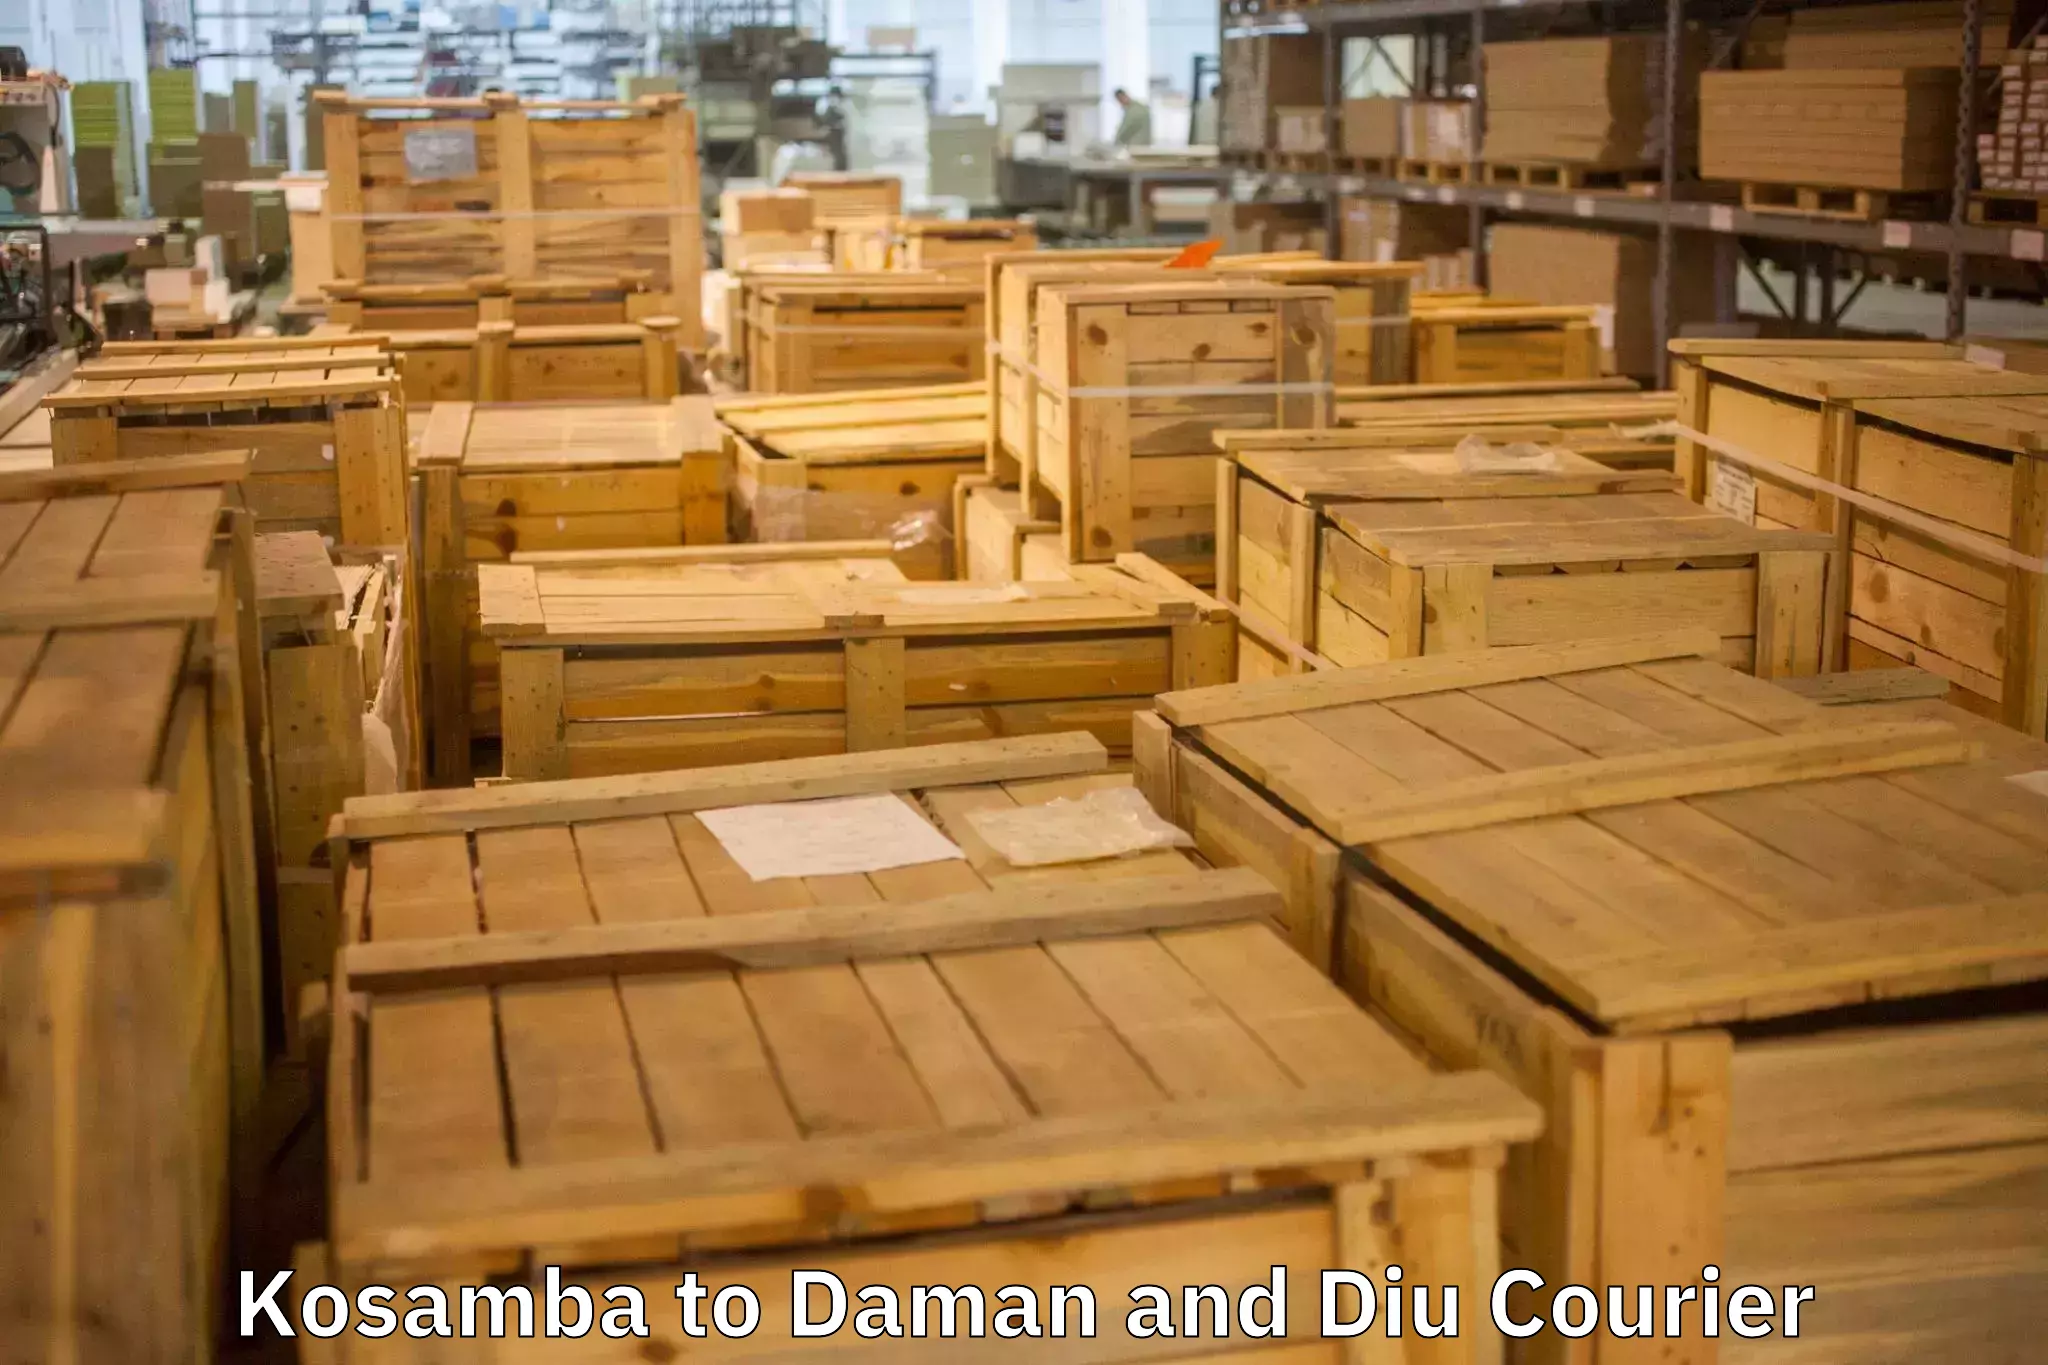 Efficient moving services Kosamba to Daman and Diu